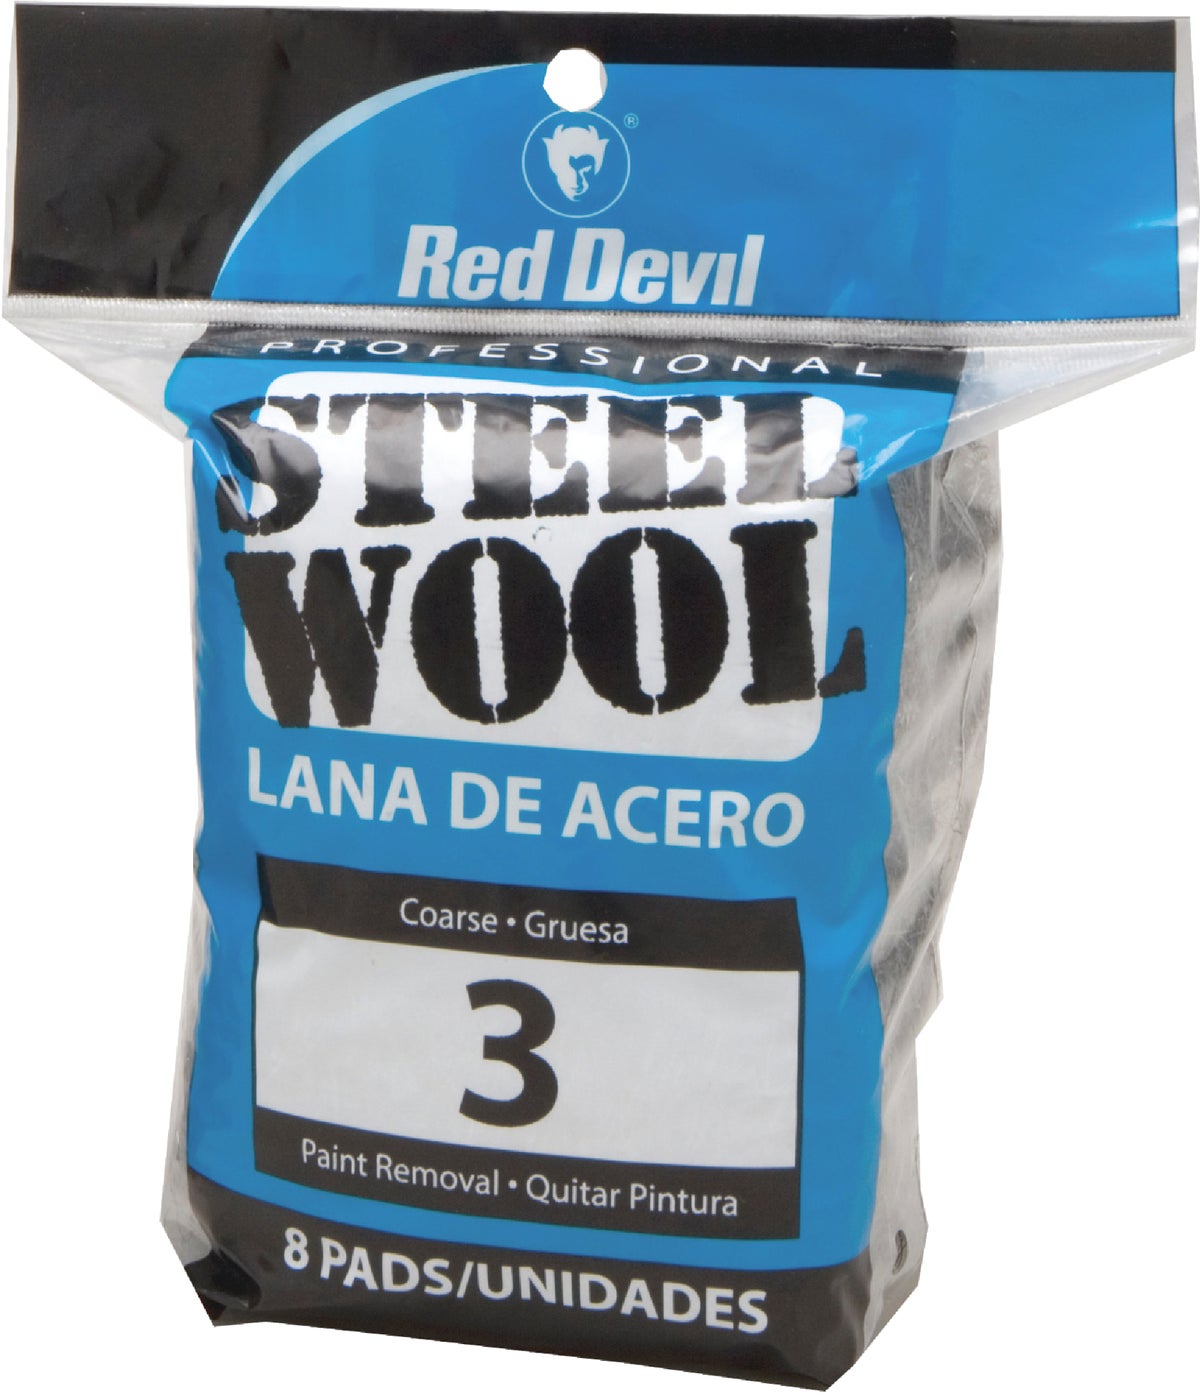 4/0000 Steel Wool (6 per package)